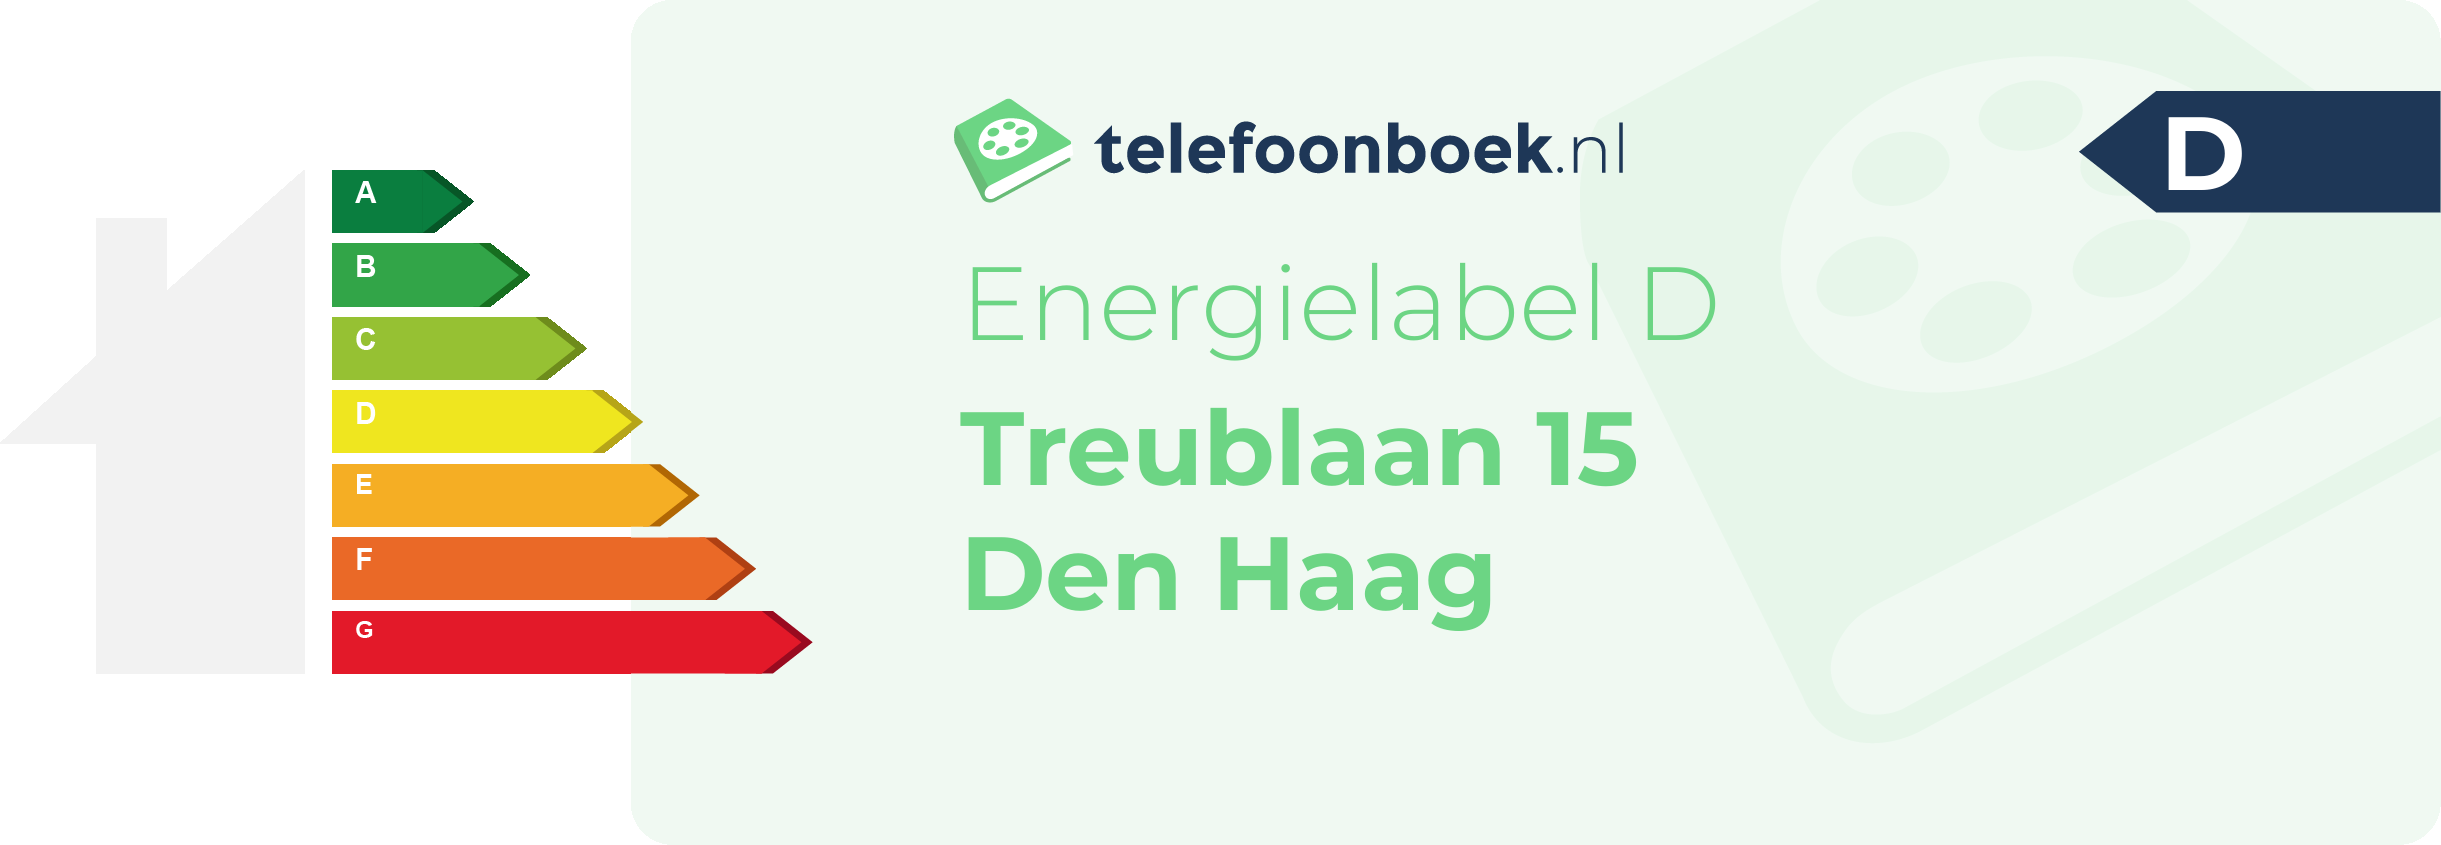 Energielabel Treublaan 15 Den Haag